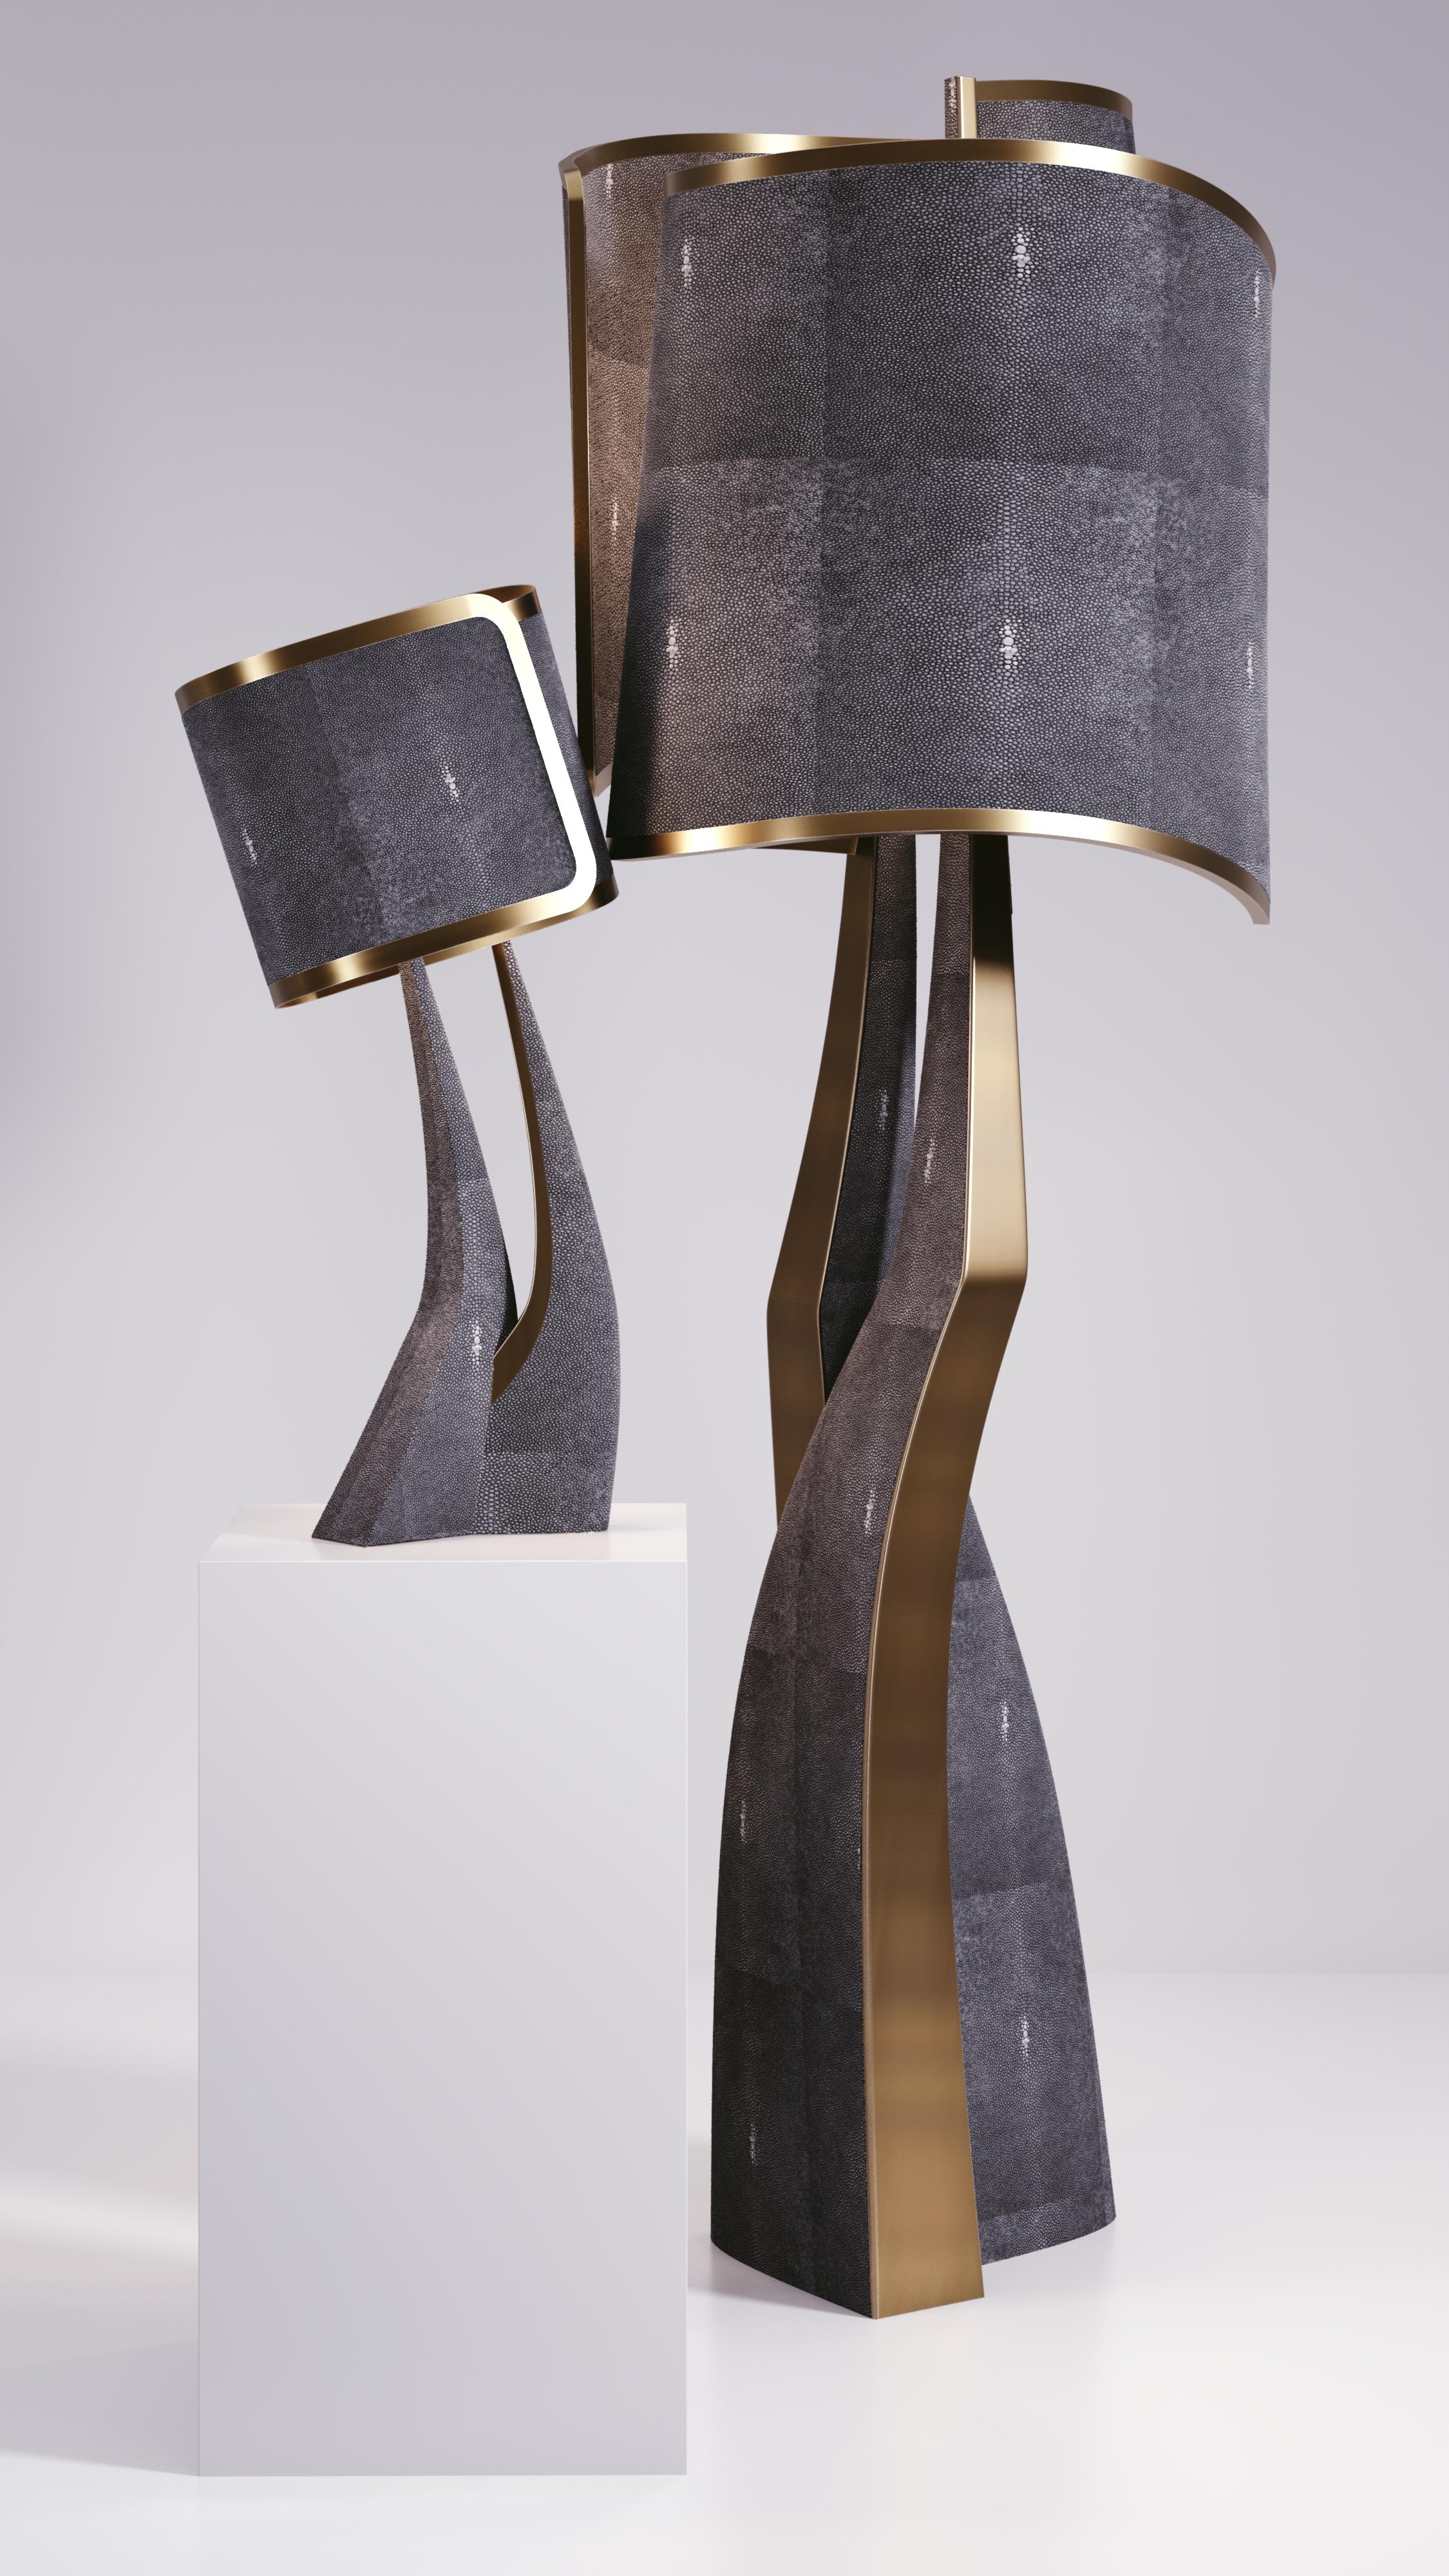 Le lampadaire Chital III de Kifu Paris est une pièce élégante et sculpturale, incrustée d'un mélange de laiton bronze-patine et de galuchat noir. Les pieds ciselés, forme emblématique de l'univers KIFU PARIS, se transforment en teintes unies qui